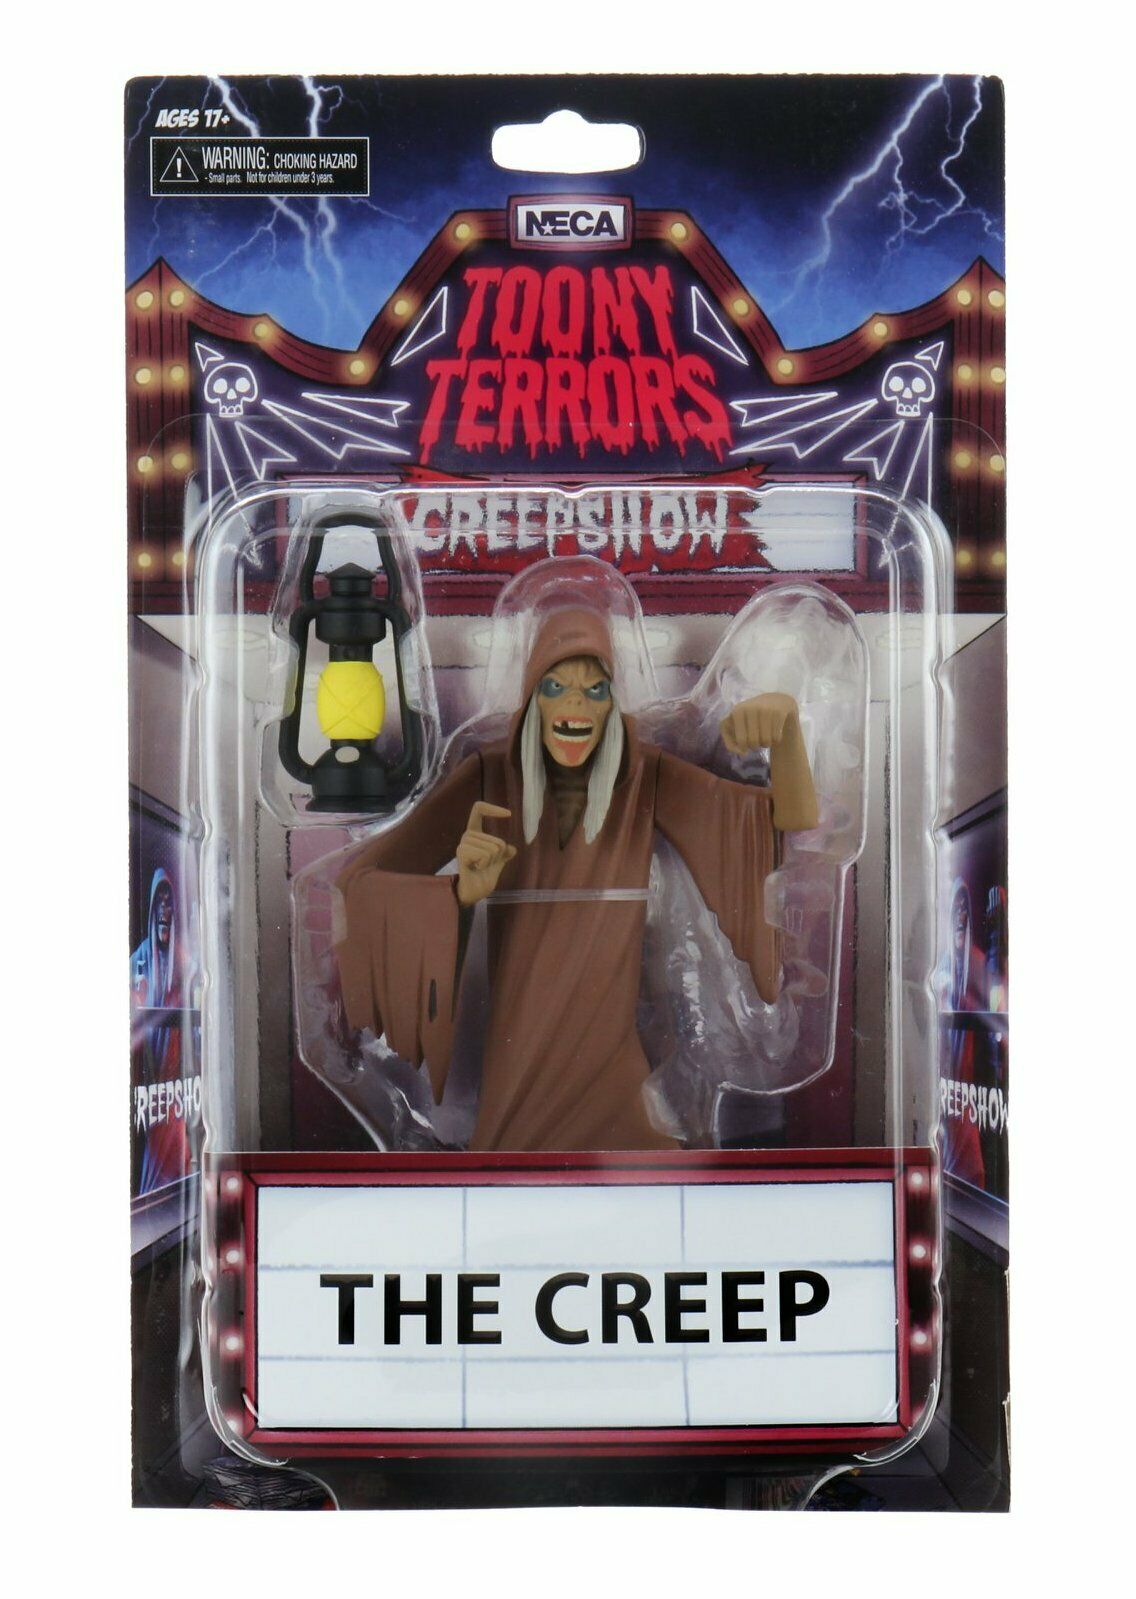 Toony Terrors 'The Creep'.